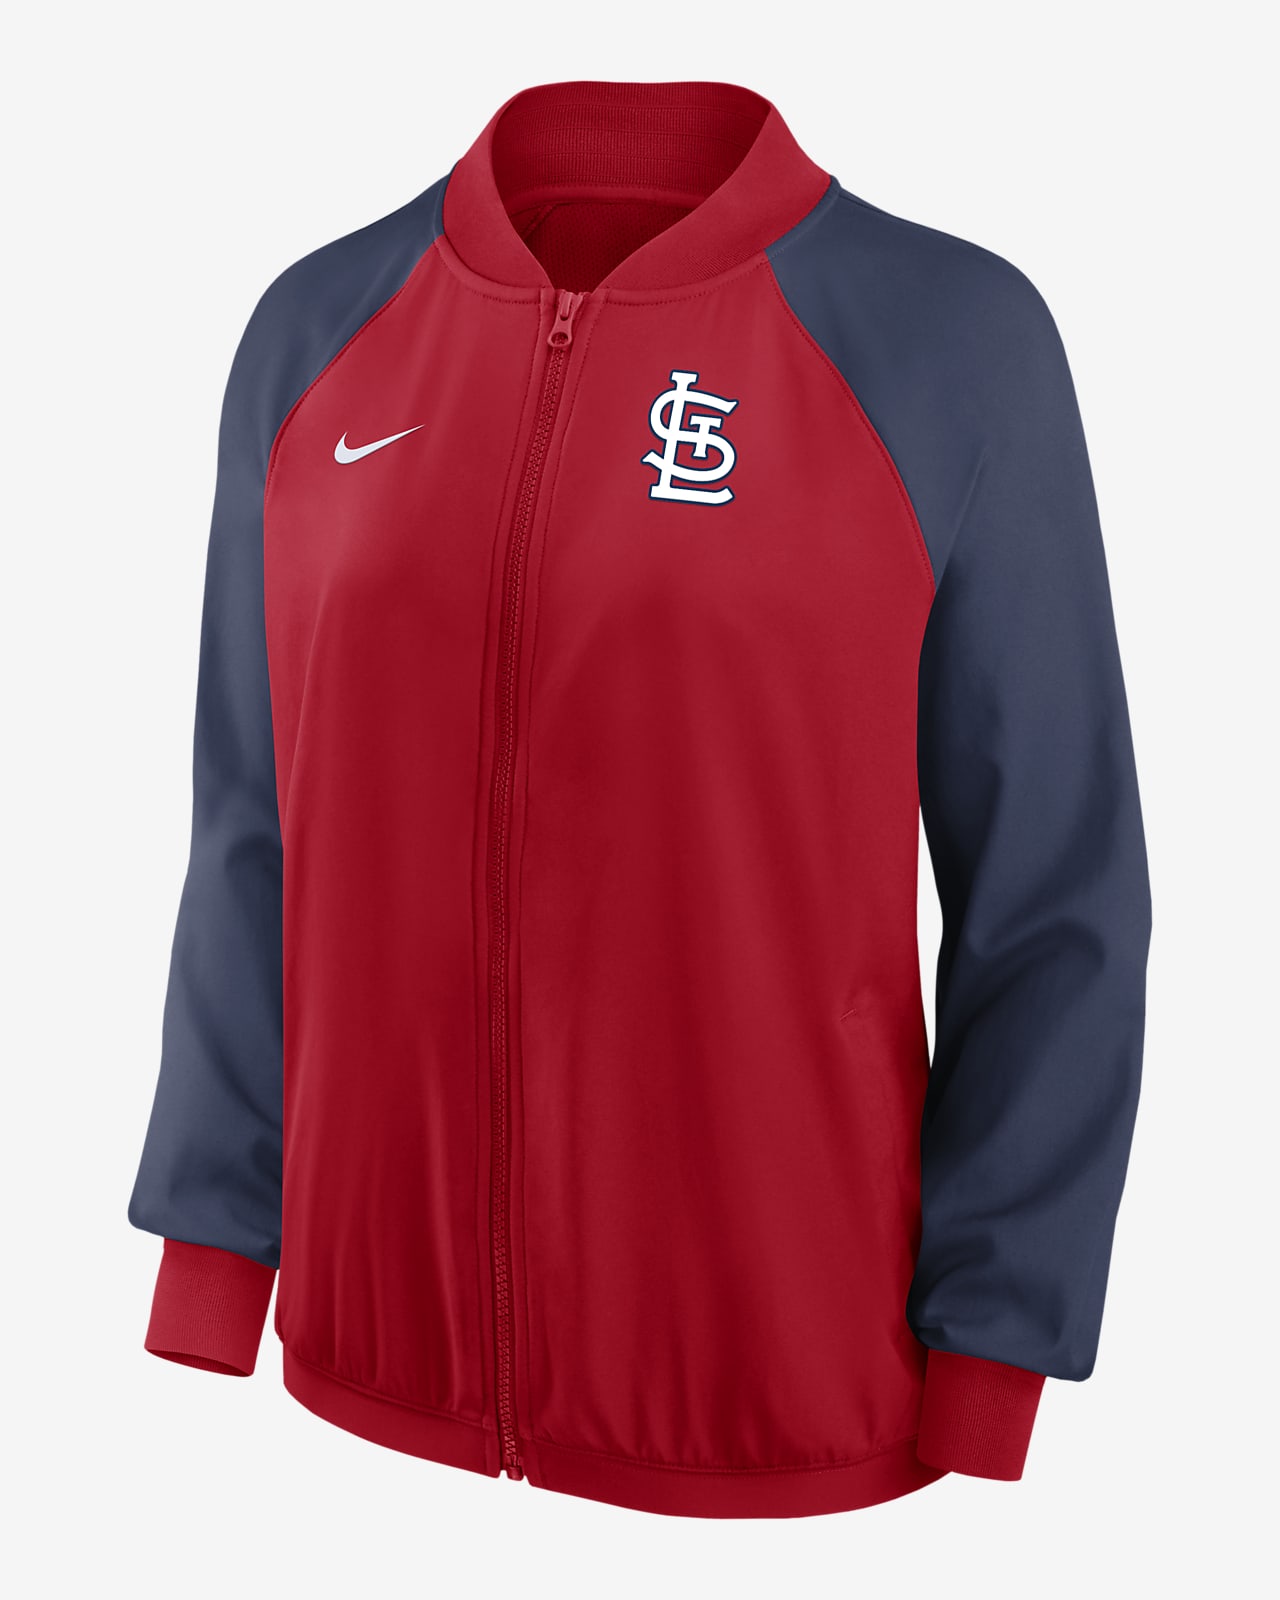 Nike Dri-FIT Team (MLB St. Louis Cardinals) Women's Full-Zip Jacket